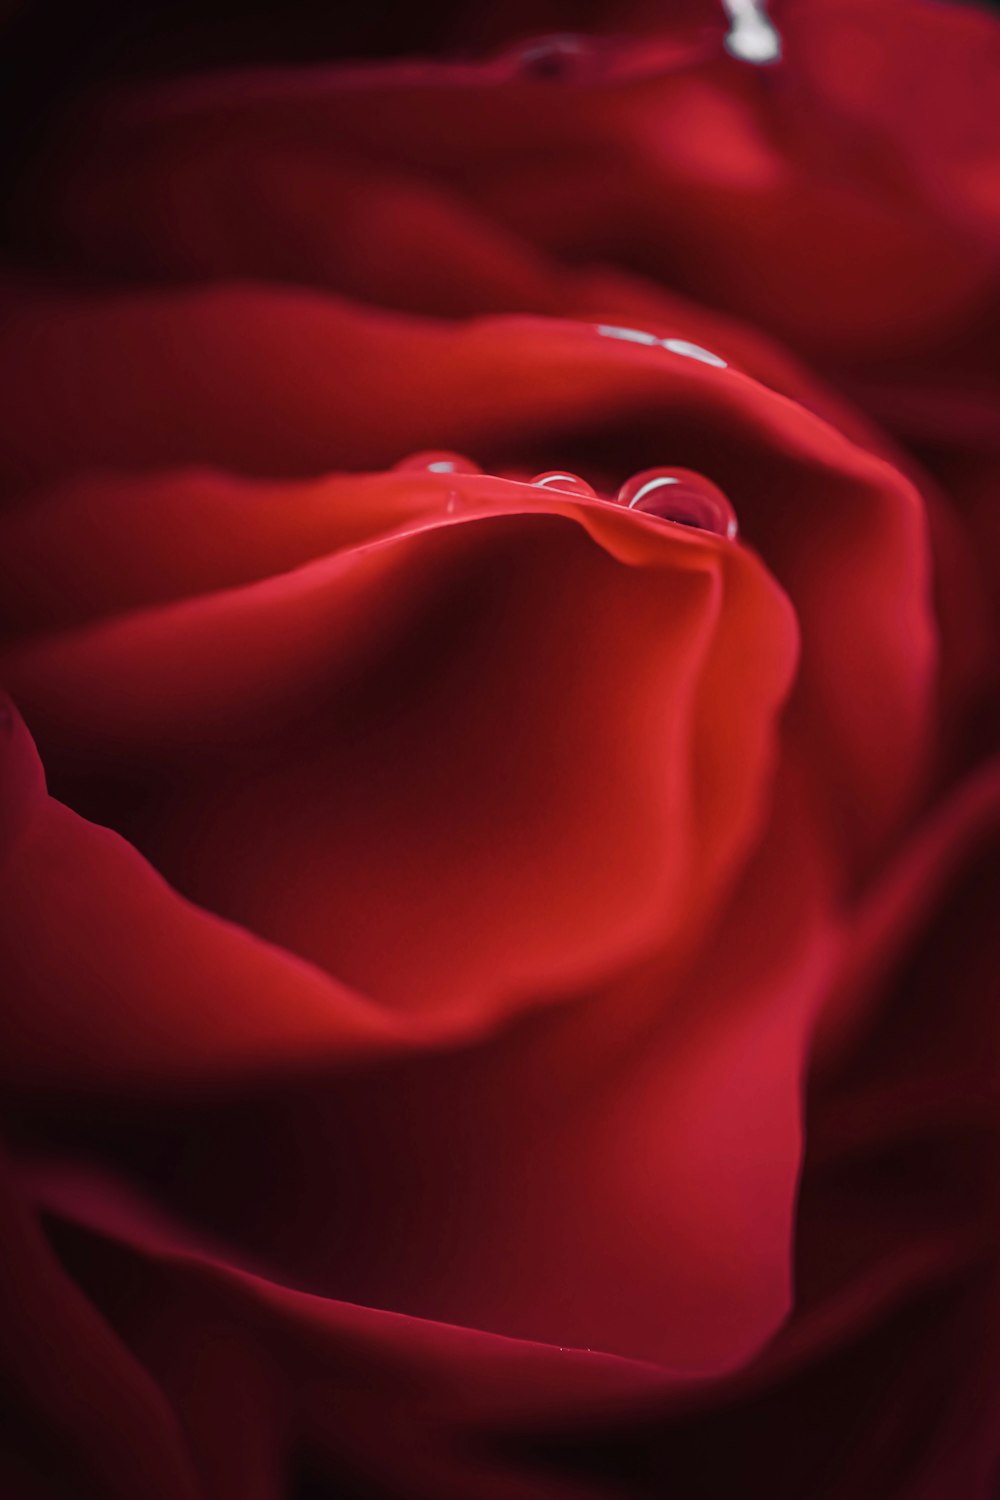 rosa vermelha na fotografia de perto